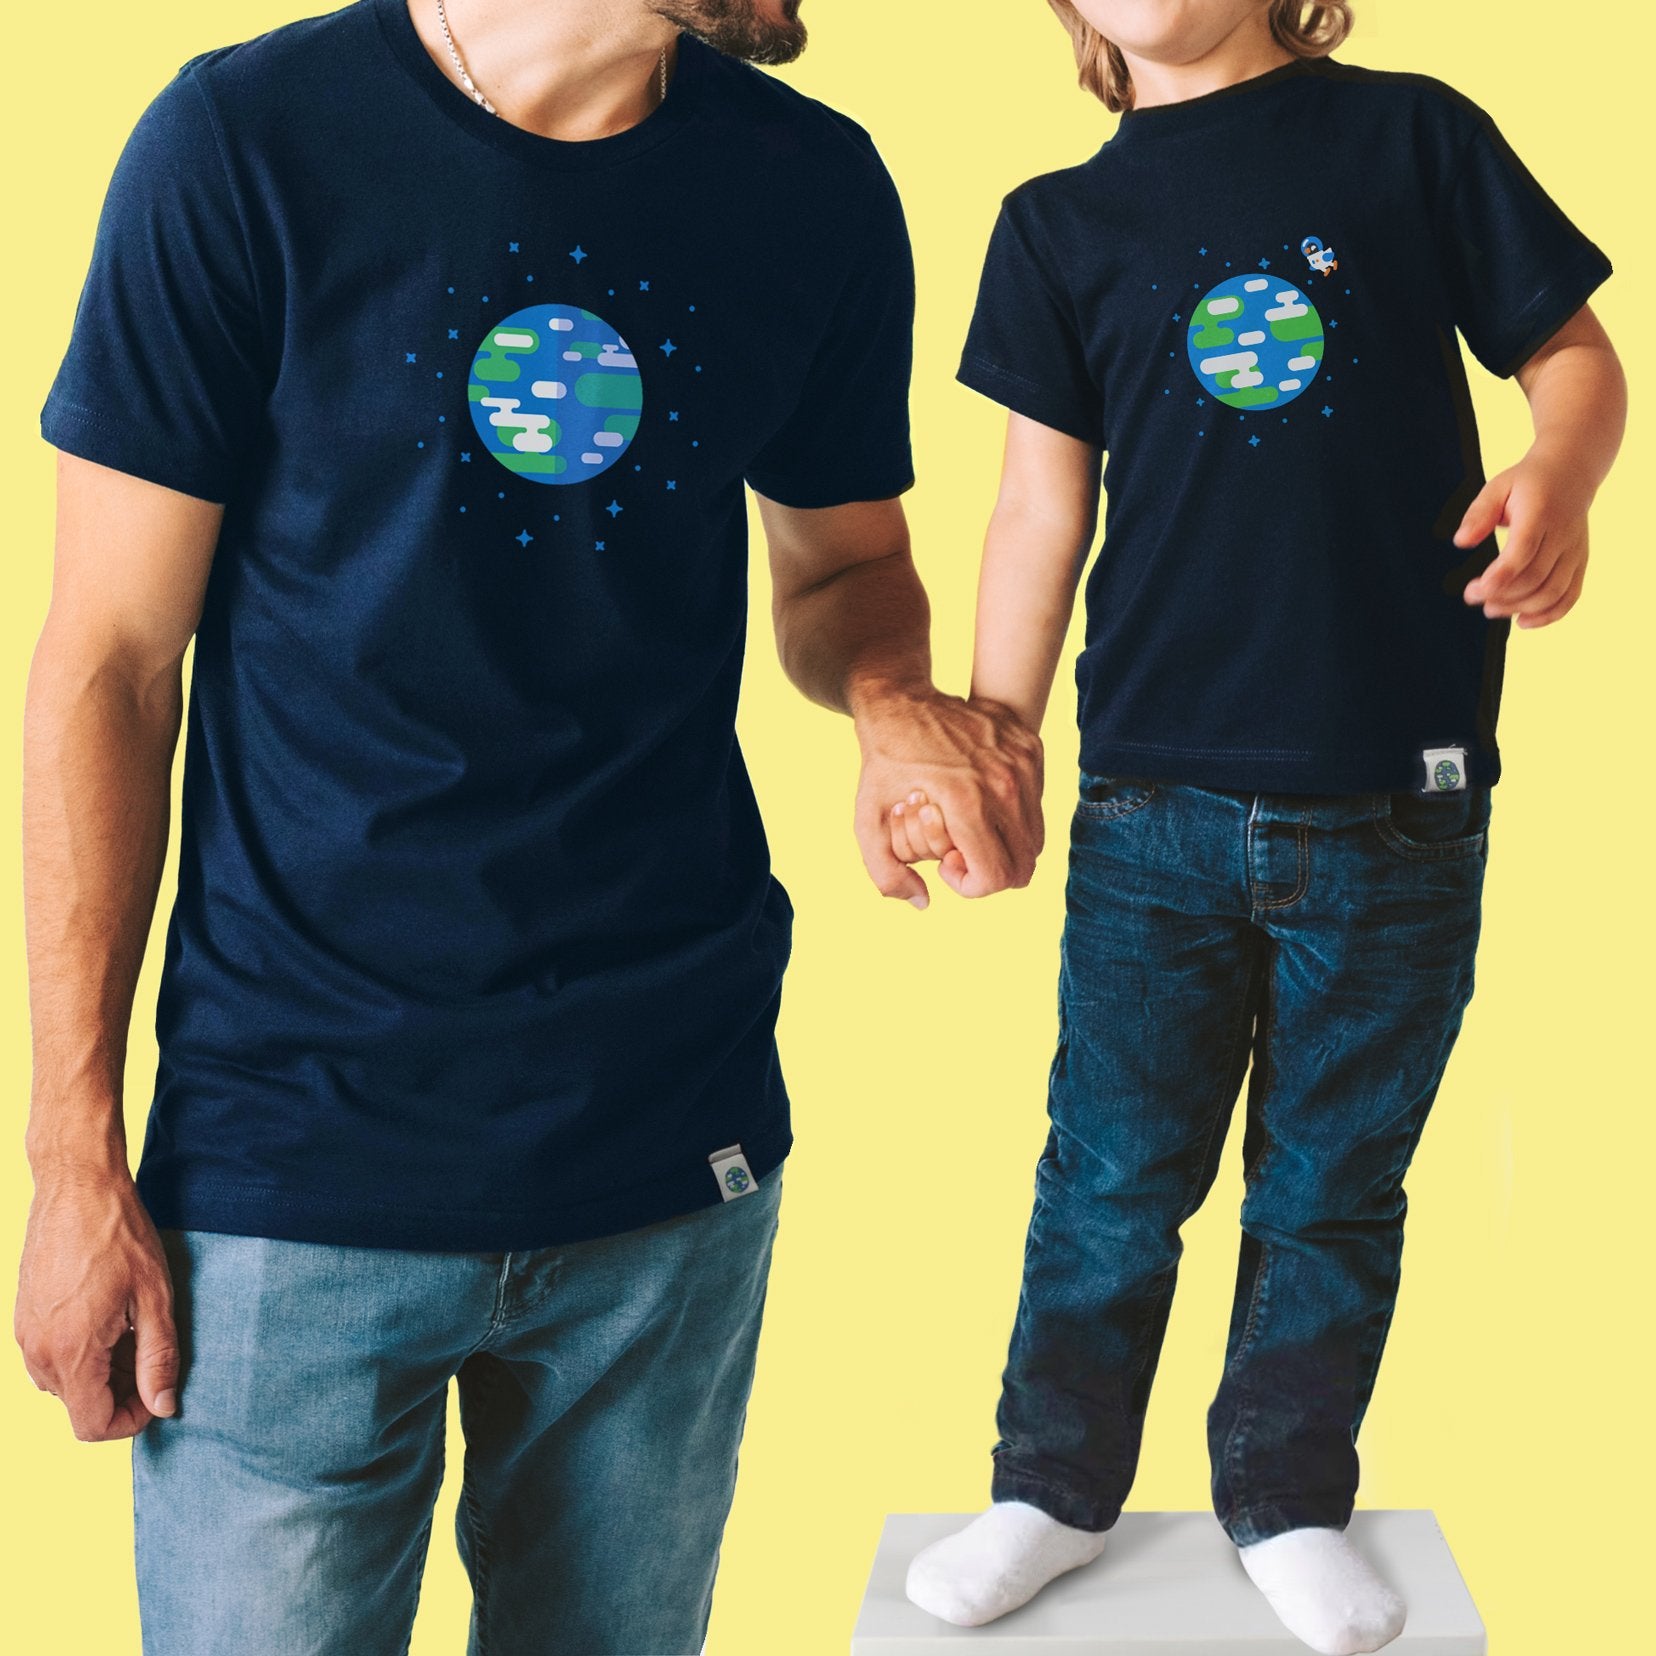 Earth T-Shirt Kids – Merch shop Official kurzgesagt – the